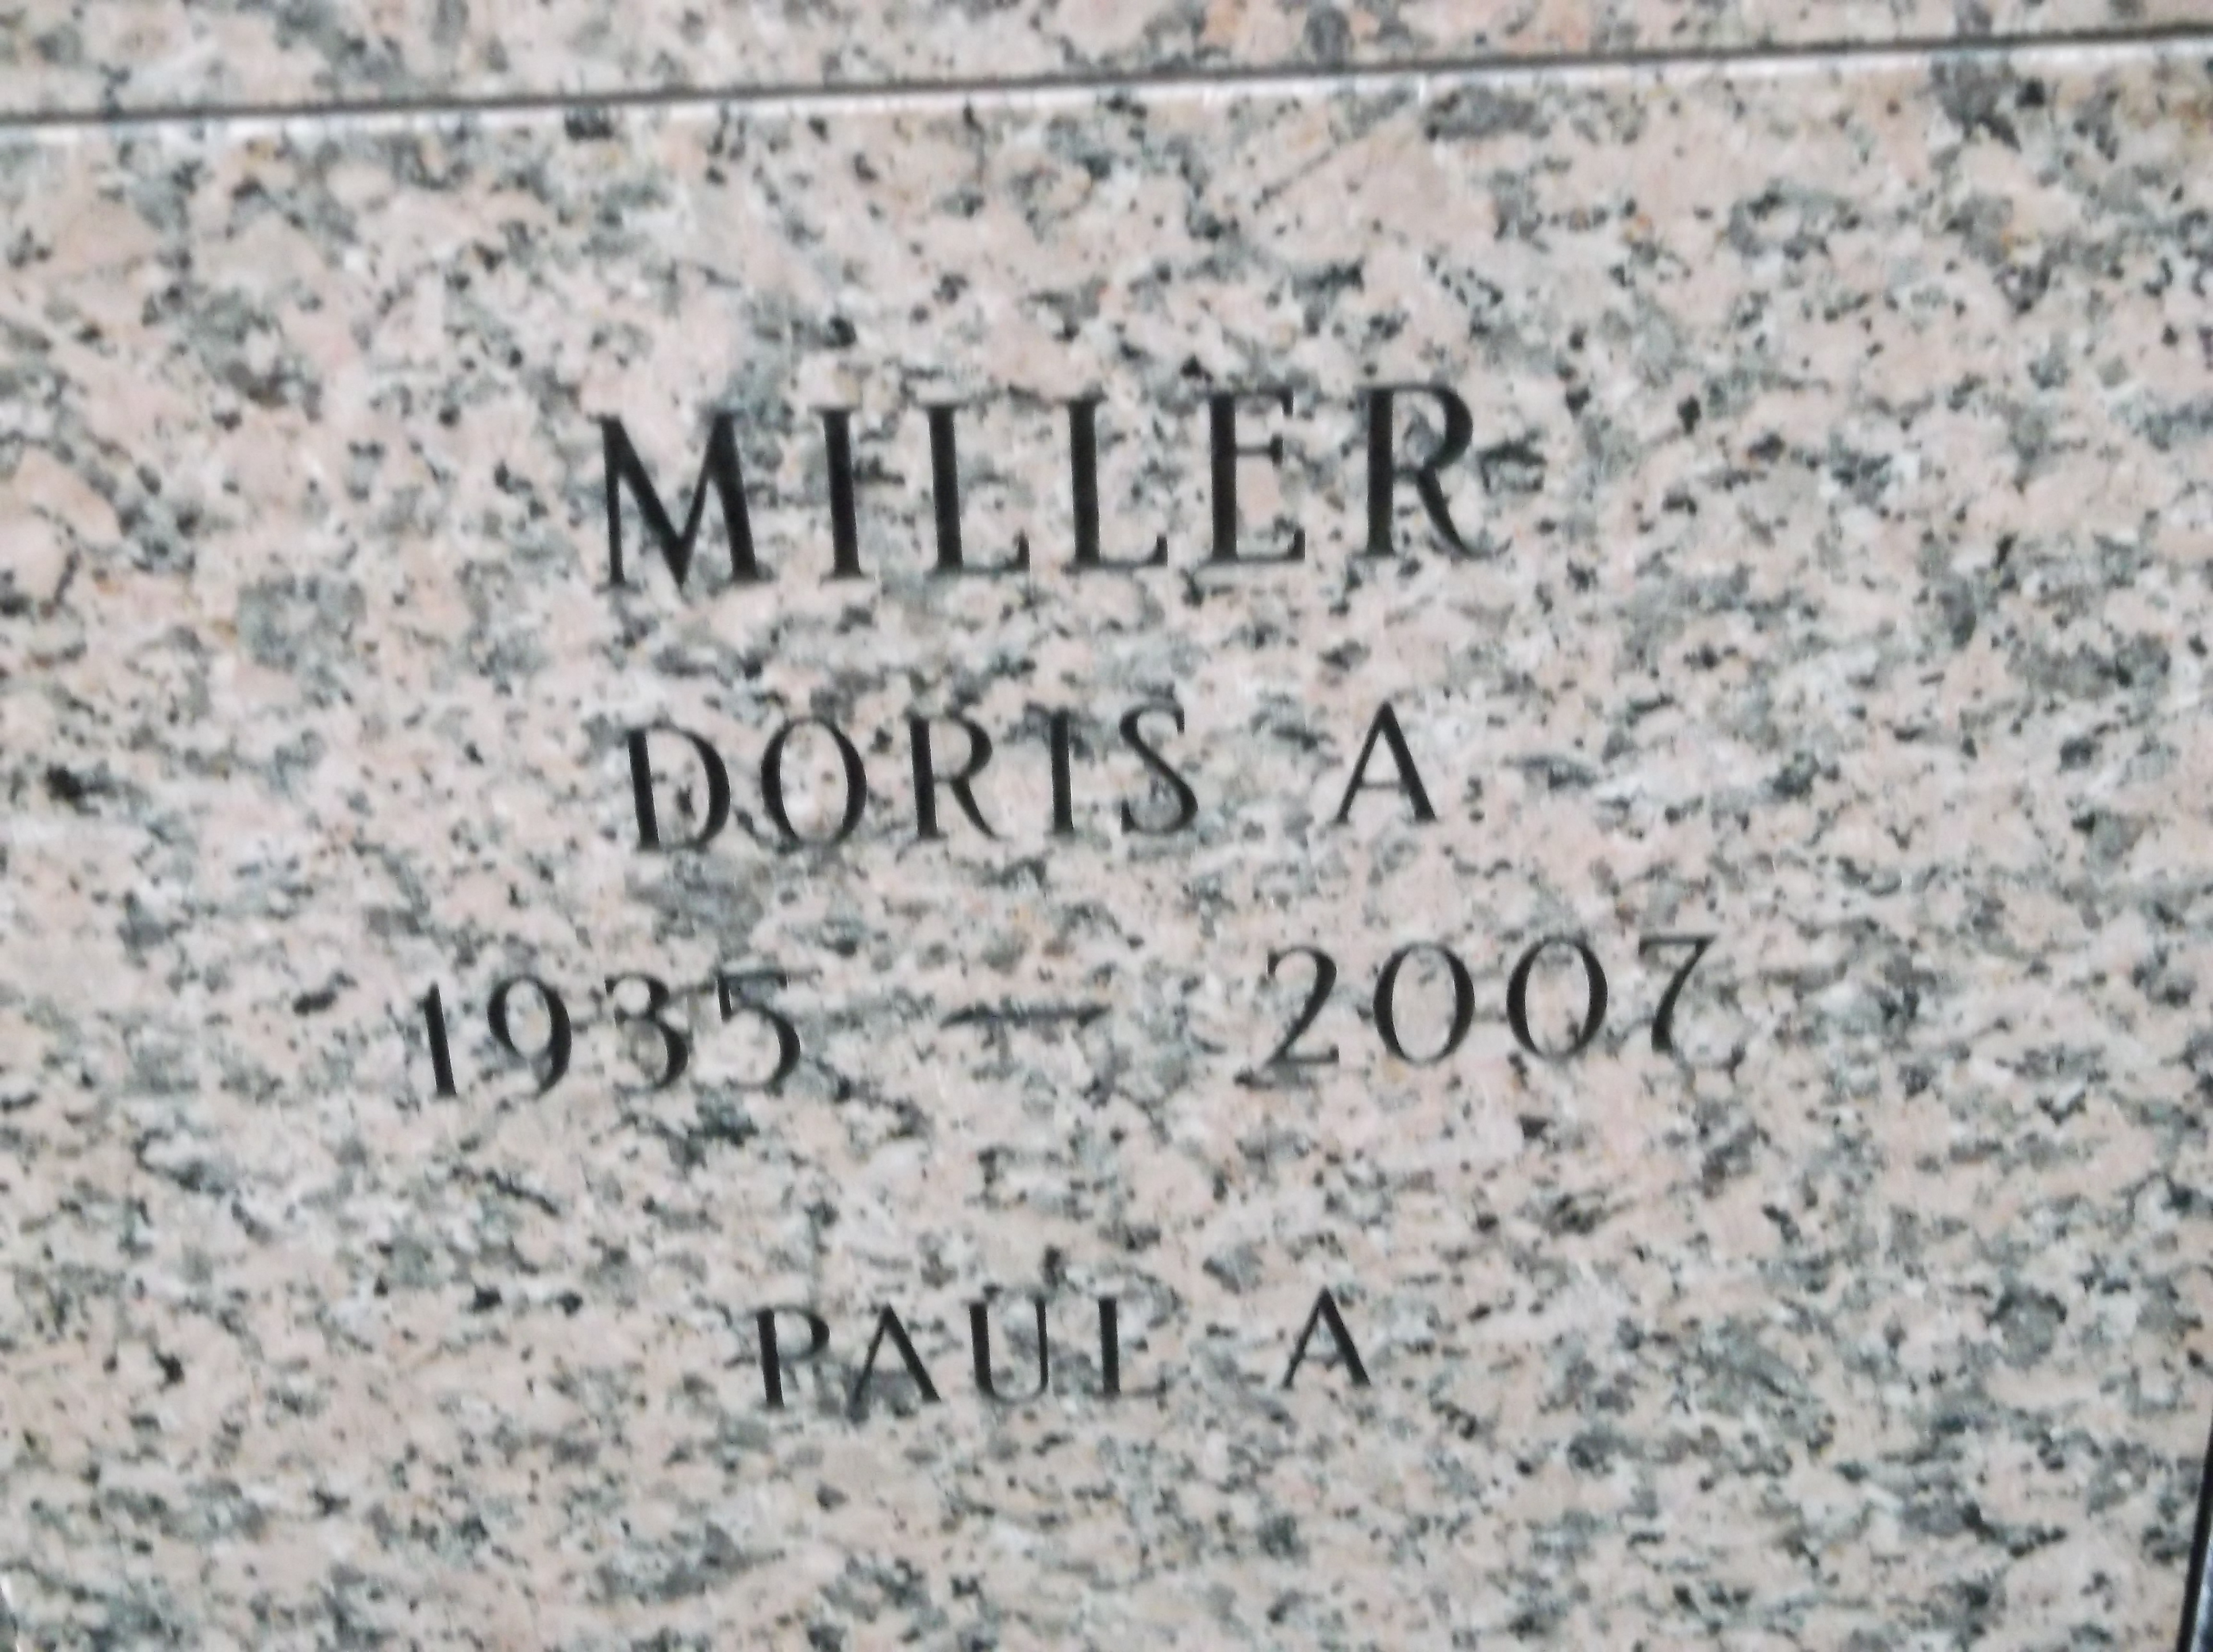 Doris A Miller